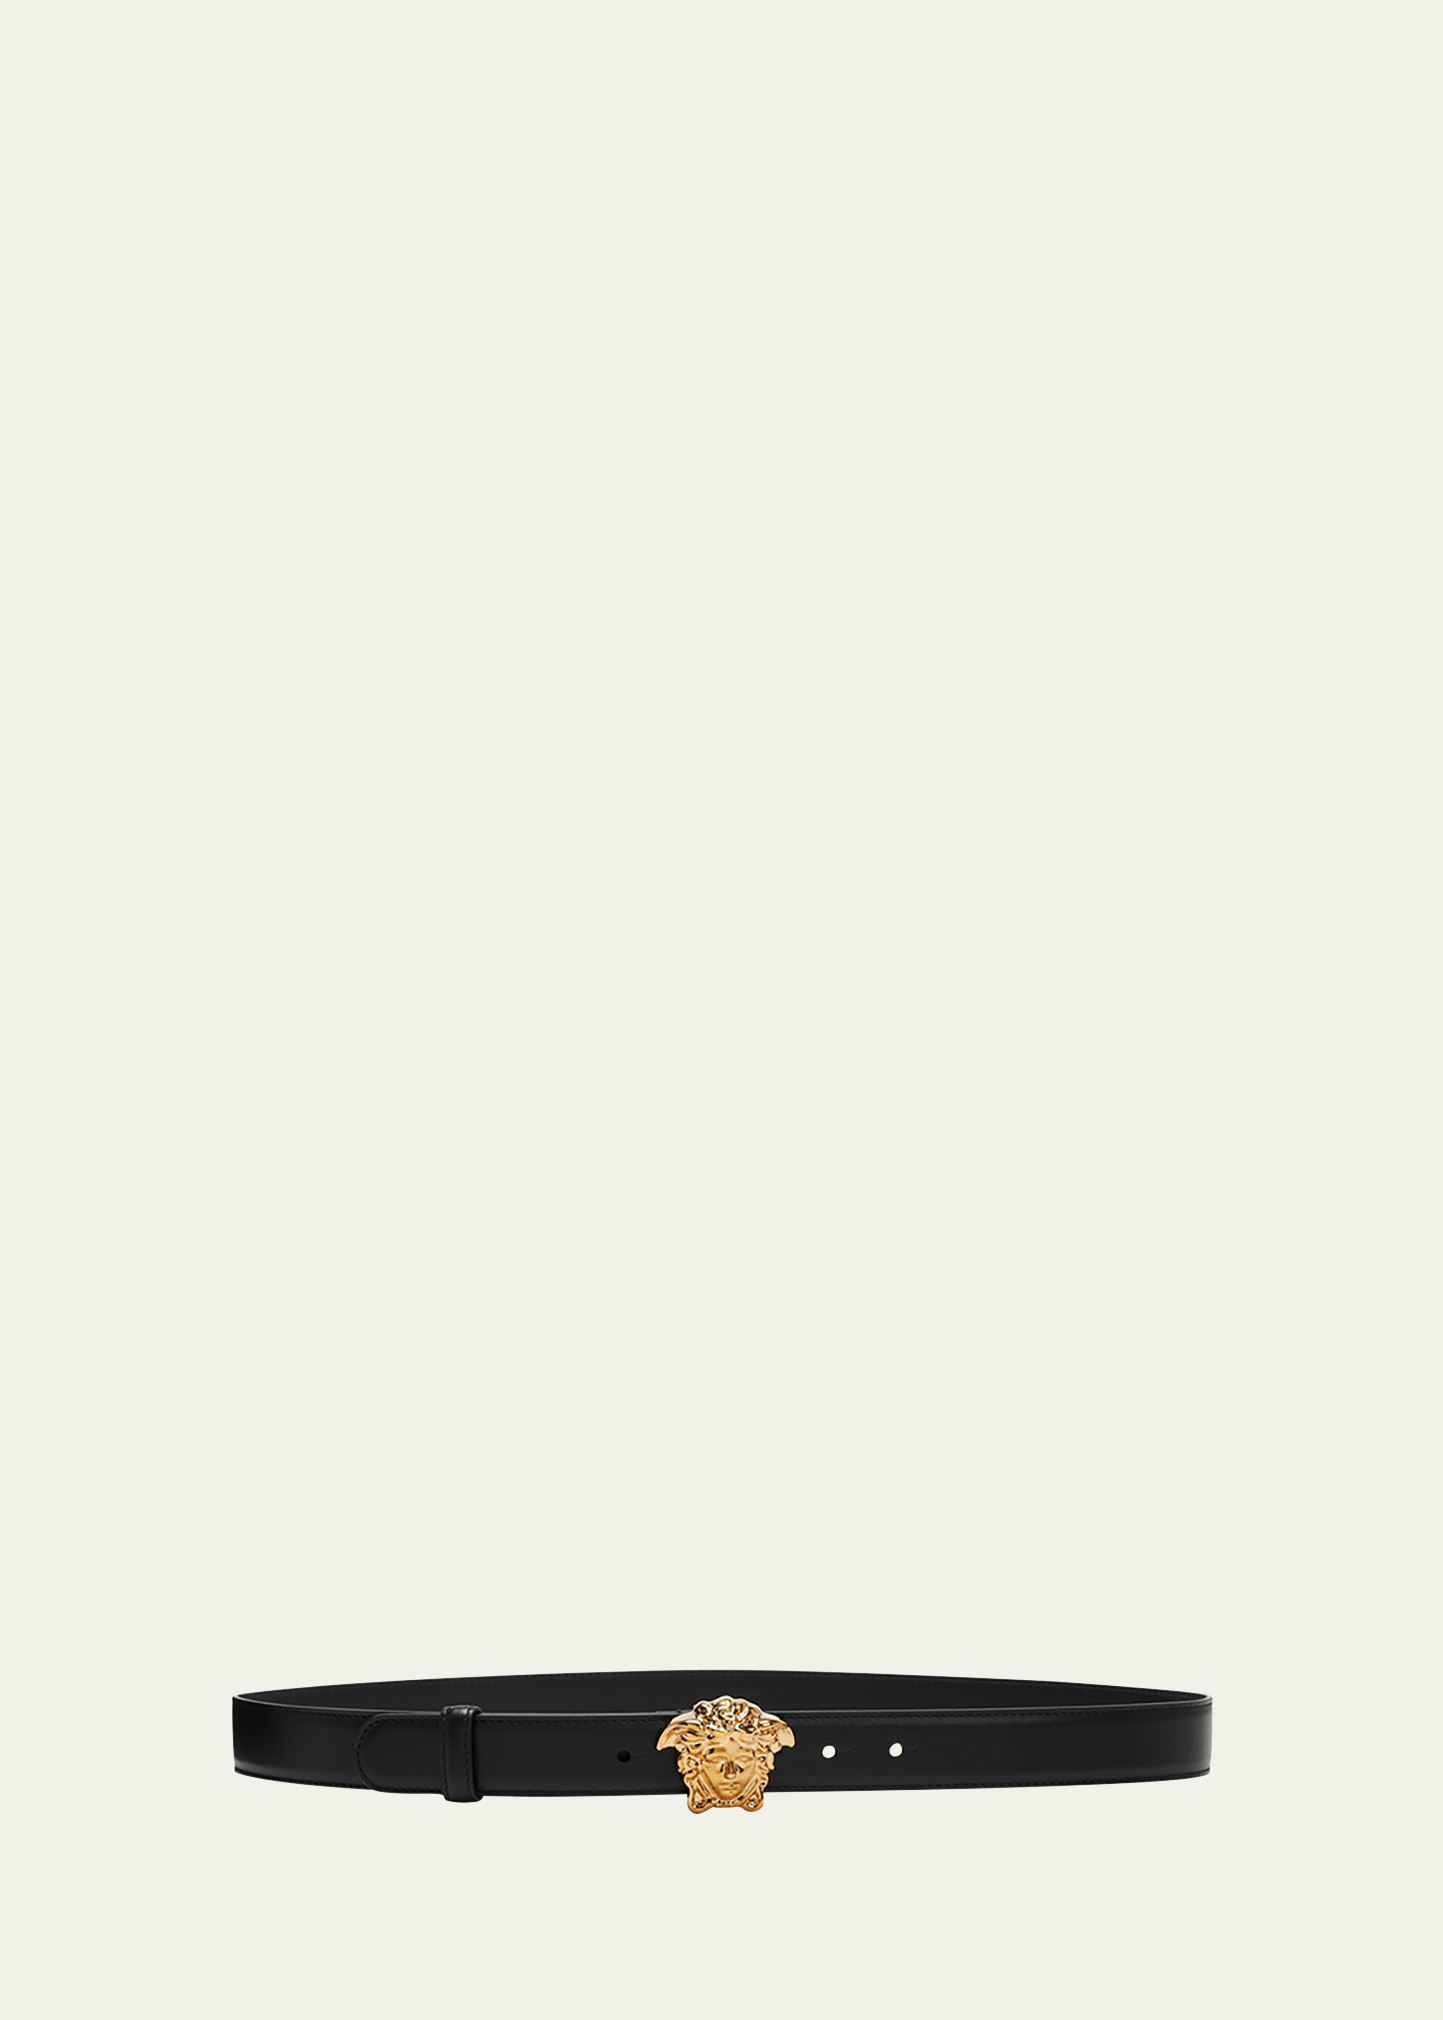 Versace La Medusa 20mm Leather Belt, Black In Black / Gold